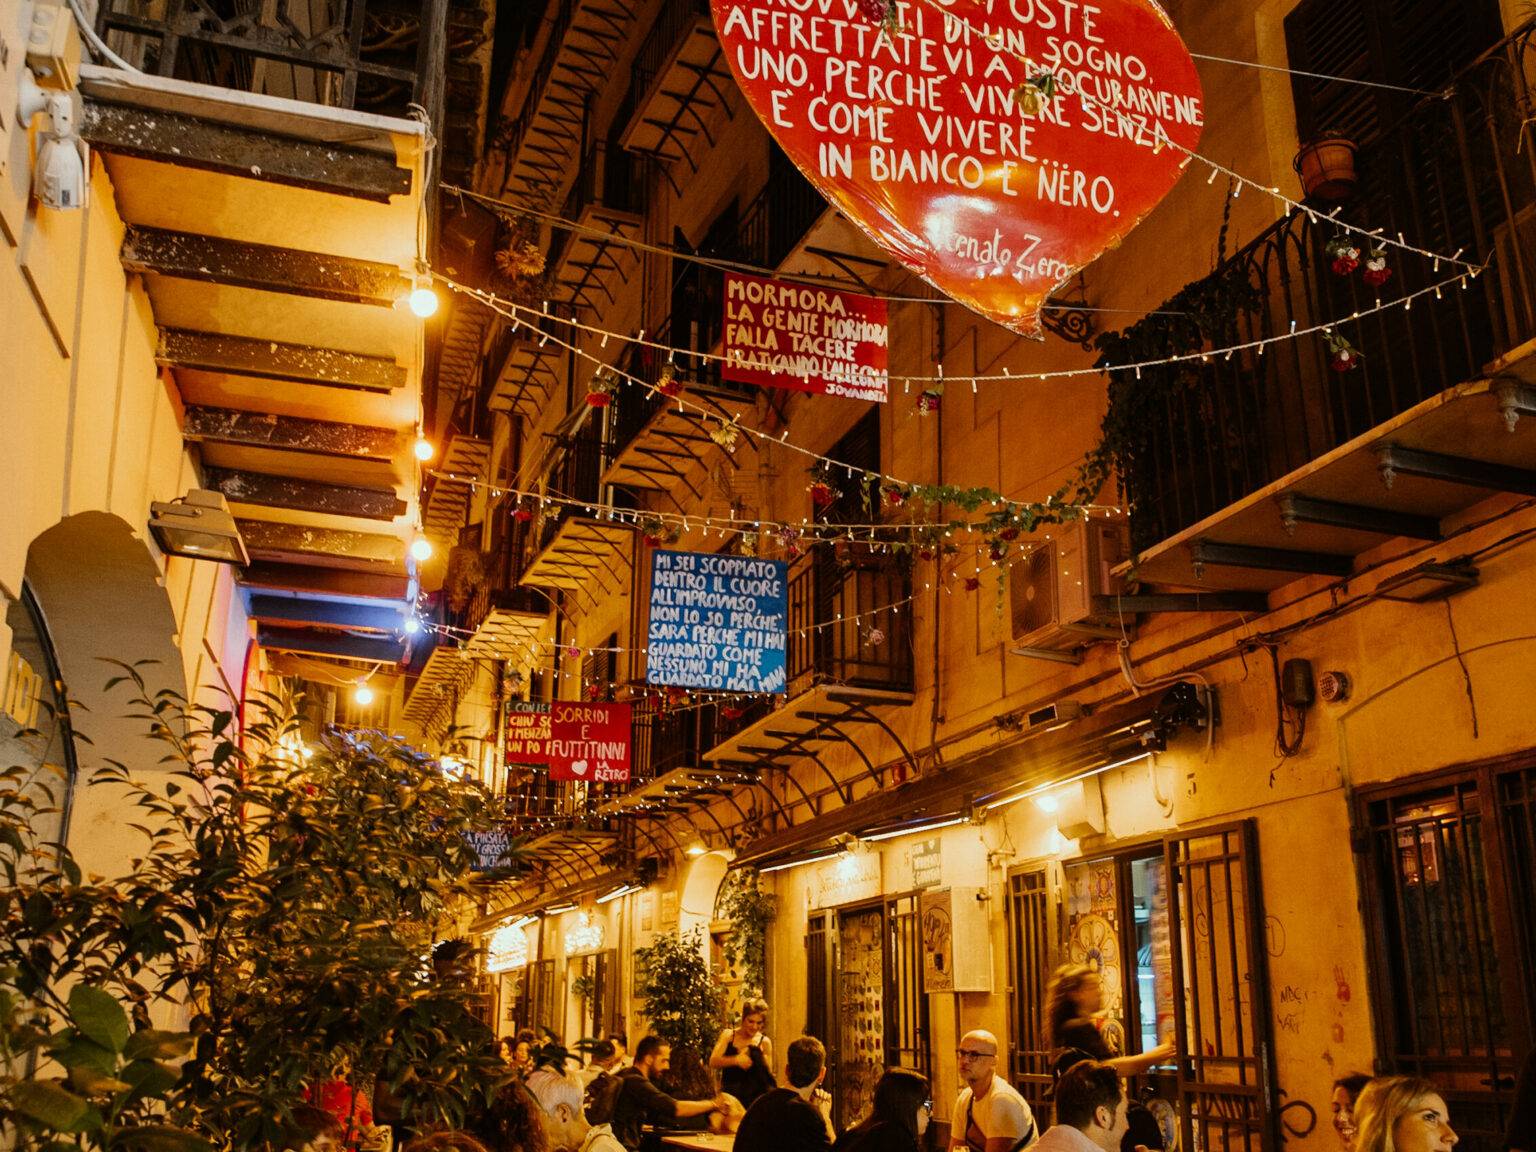 Eine Gasse in Palermo am Abend, Menschen sitzen draußen und essen.